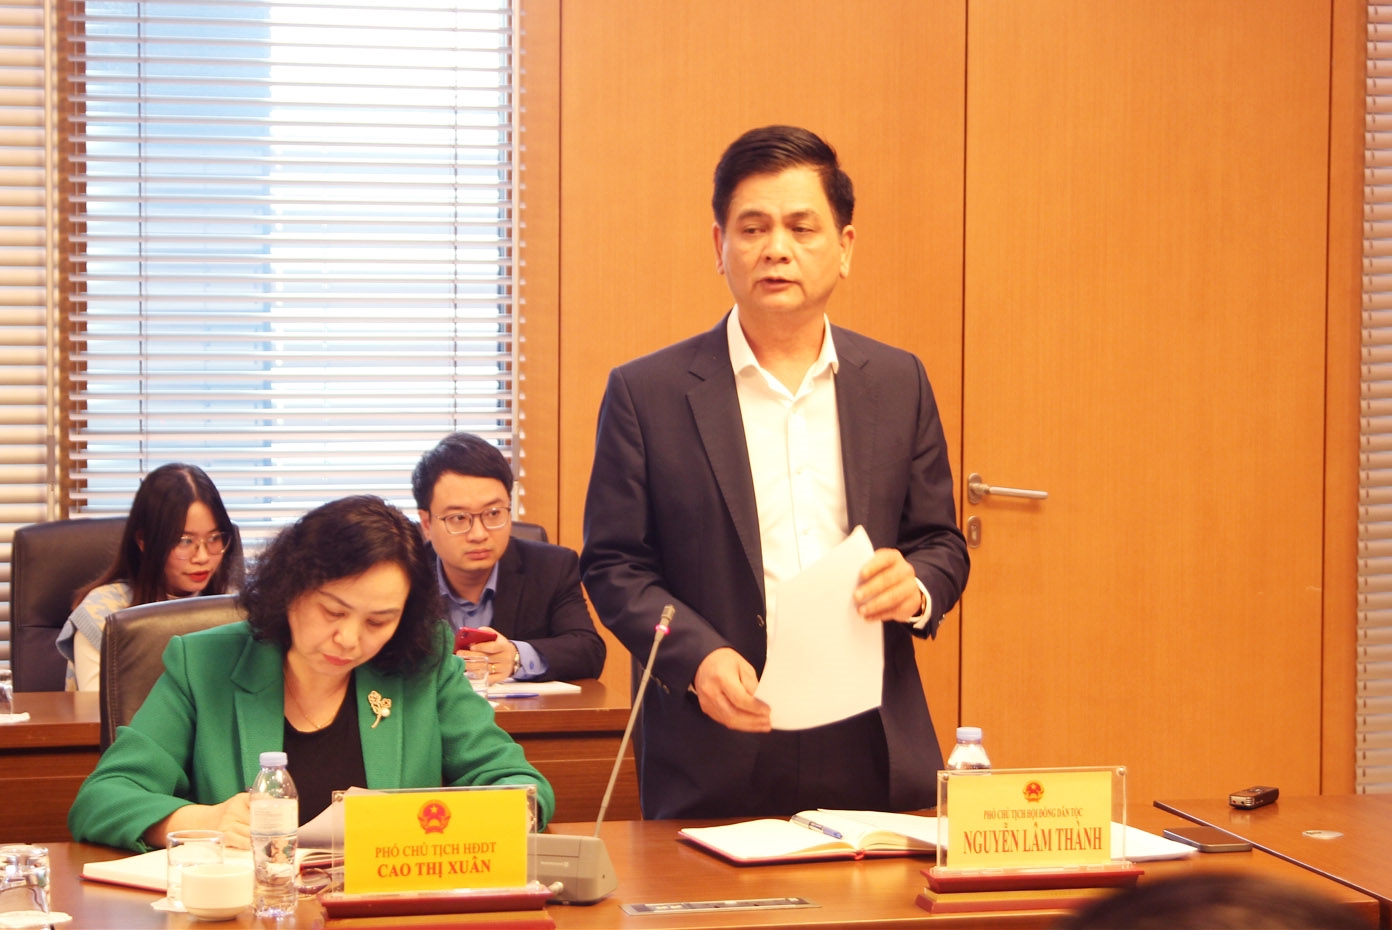 Phó Chủ tịch HĐDT Nguyễn Lâm Thành trình bày báo cáo Giám sát tối cao về các chương trình MTQG 